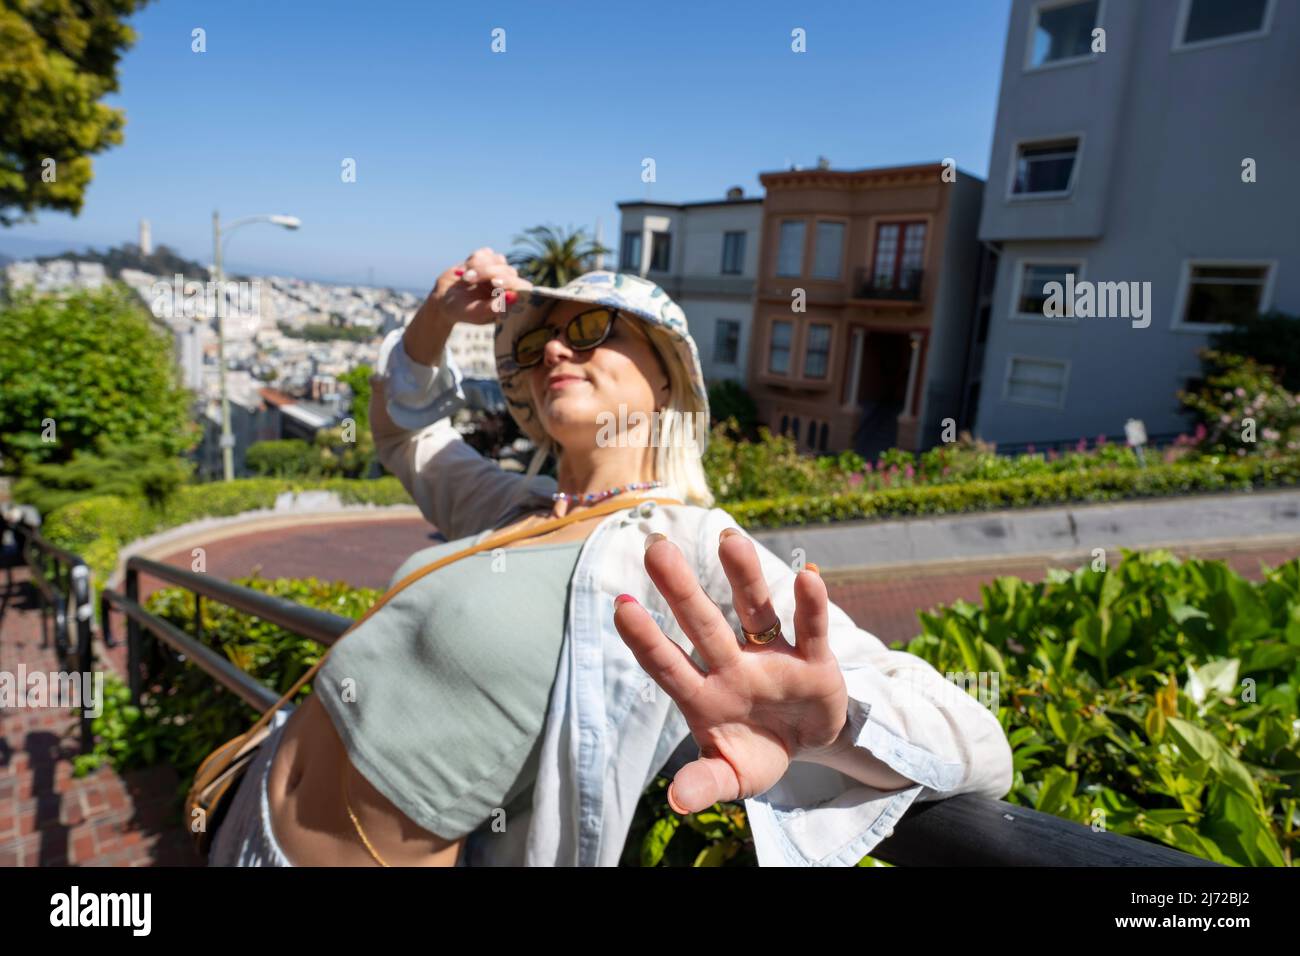 Jeune femme en tant que touriste sur Lombard Street à San Francisco | Tourisme de style de vie Banque D'Images